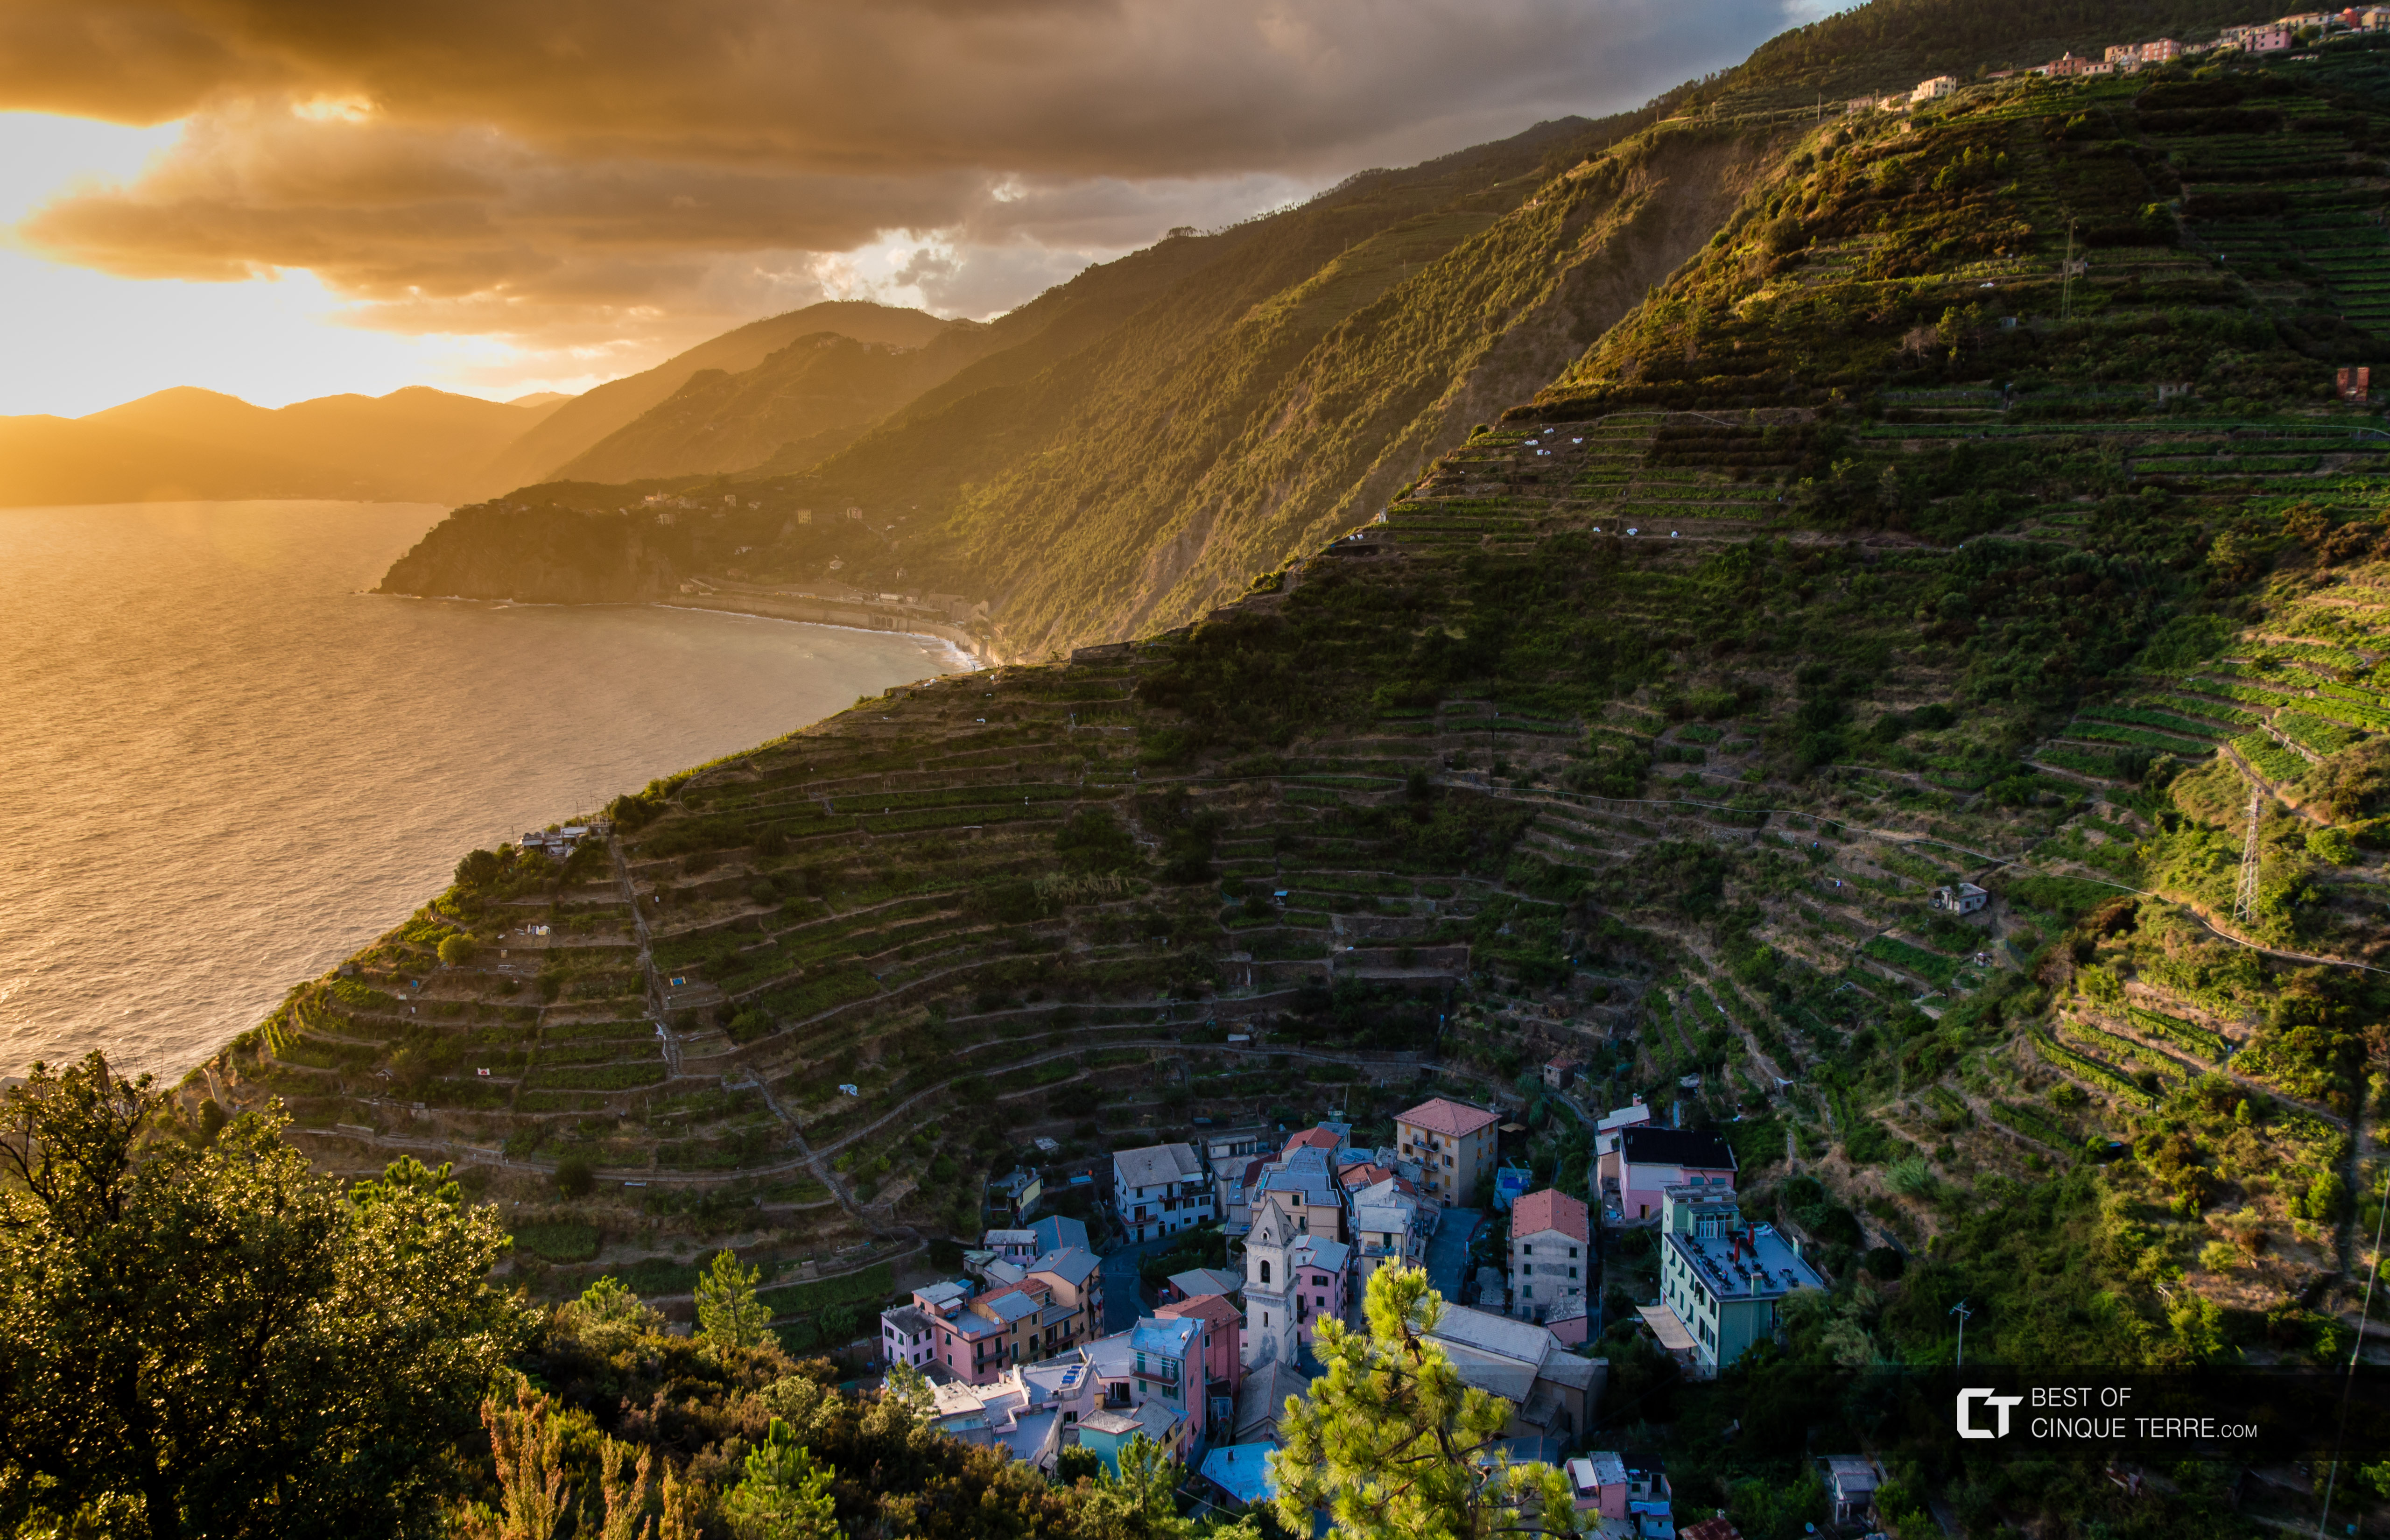 Foto da vila feita na trilha Beccara, Manarola, Cinque Terre, Itália